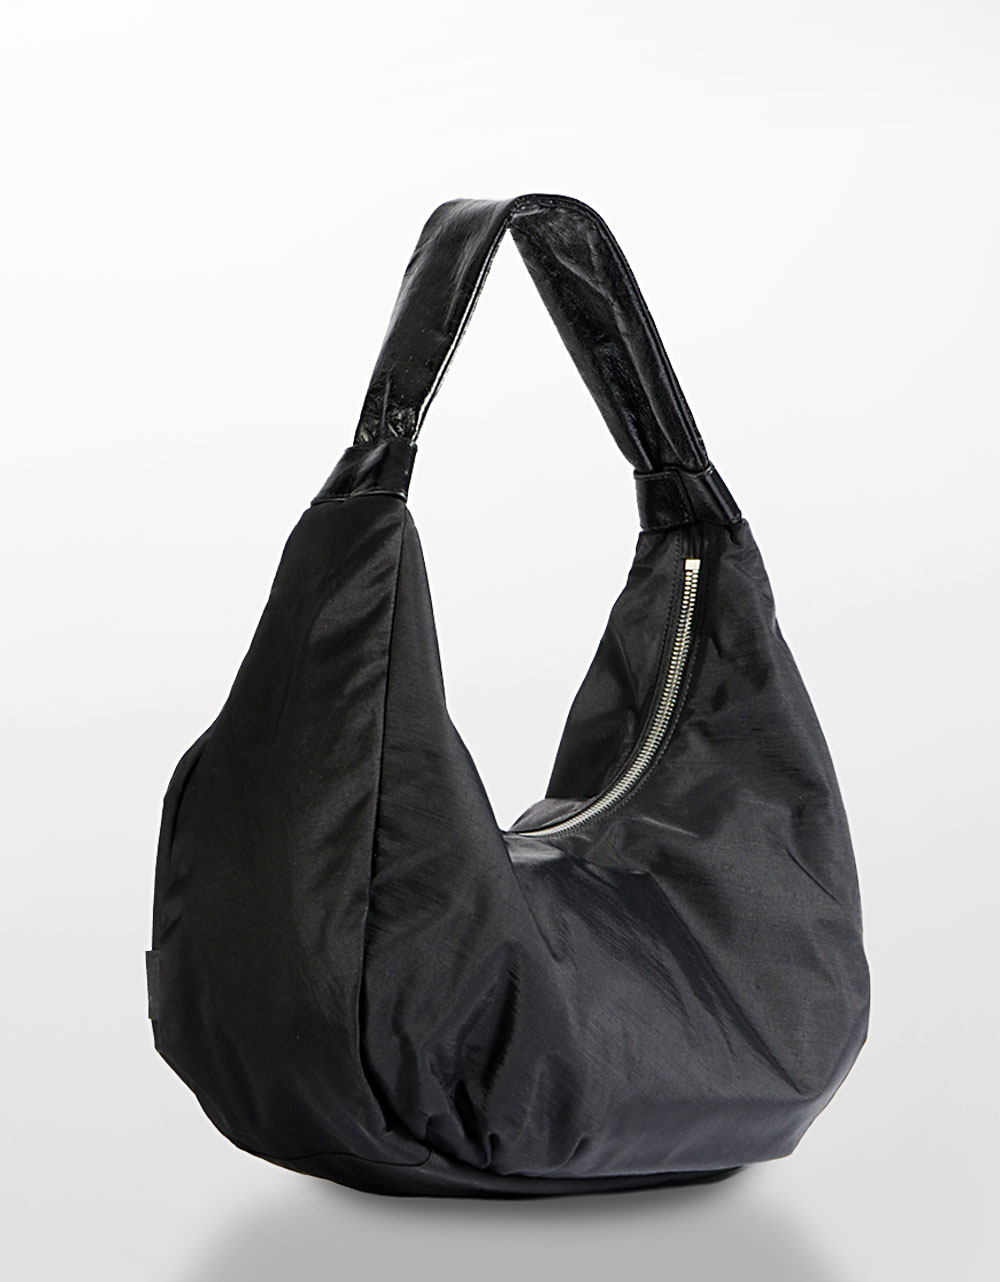 Lyst - Hobo International Turner Nylon Hobo Bag in Black